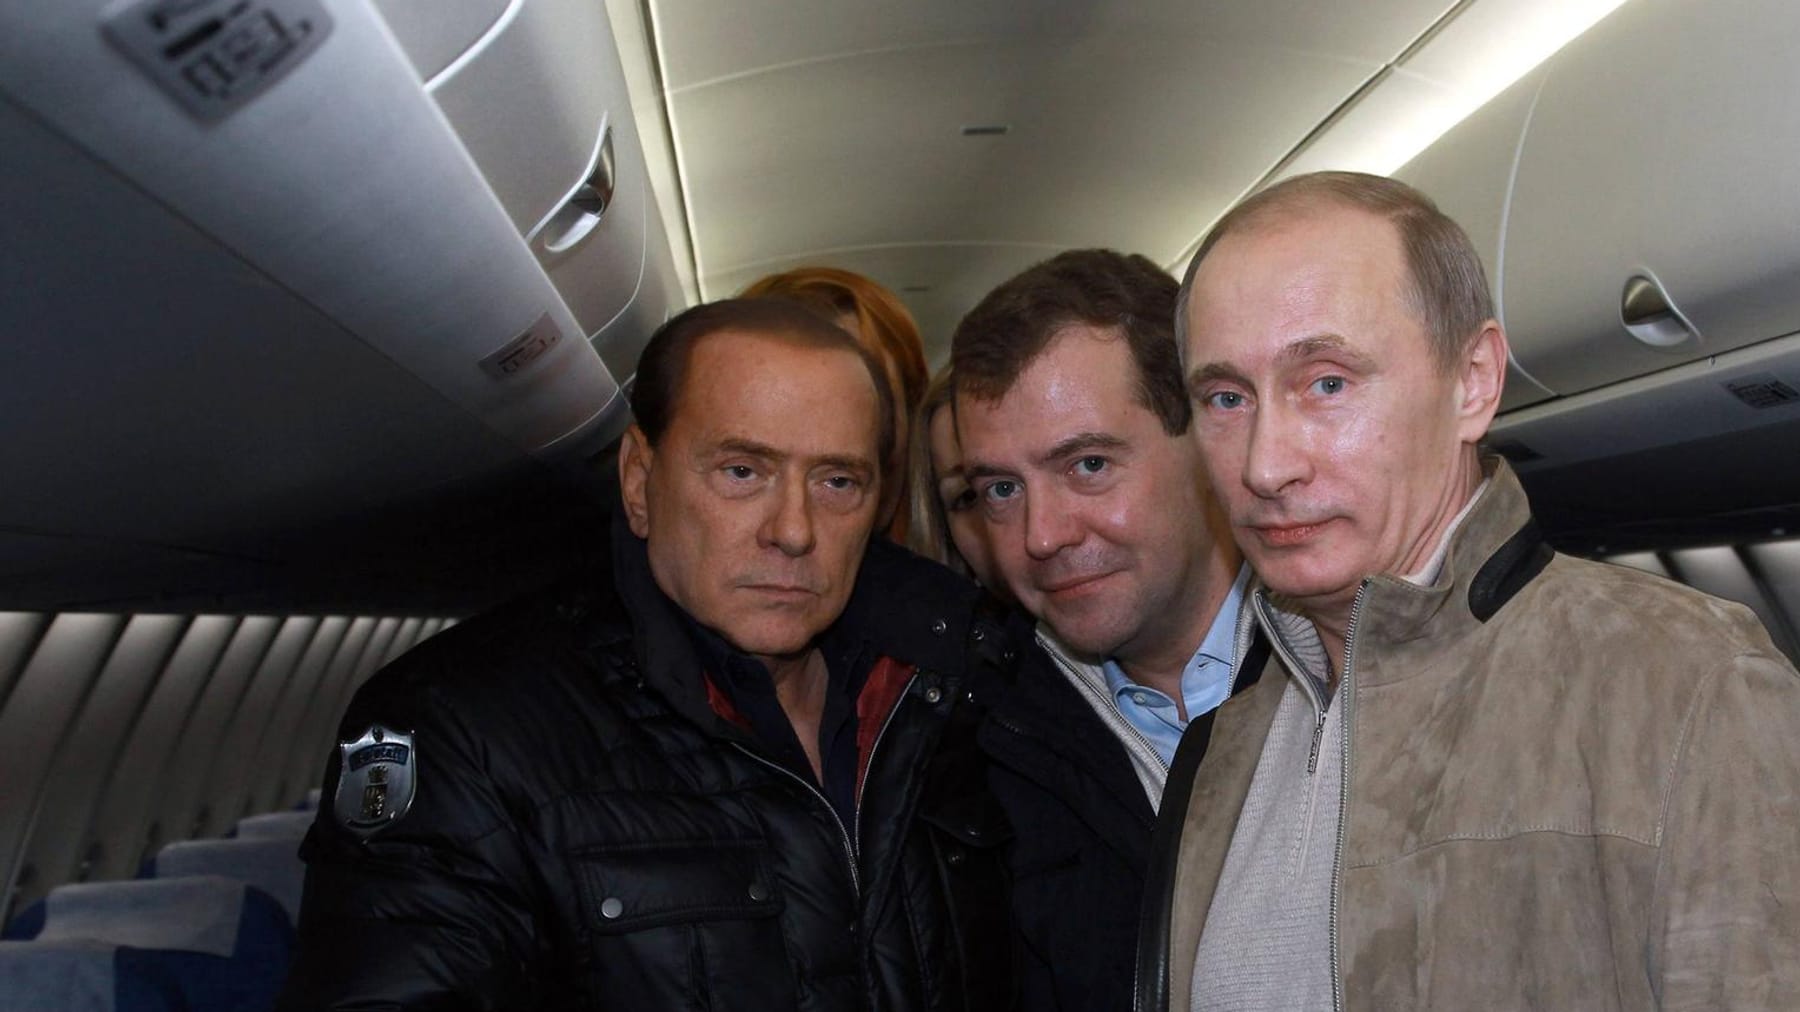 L’ex presidente del Consiglio Berlusconi “profondamente deluso” da Putin